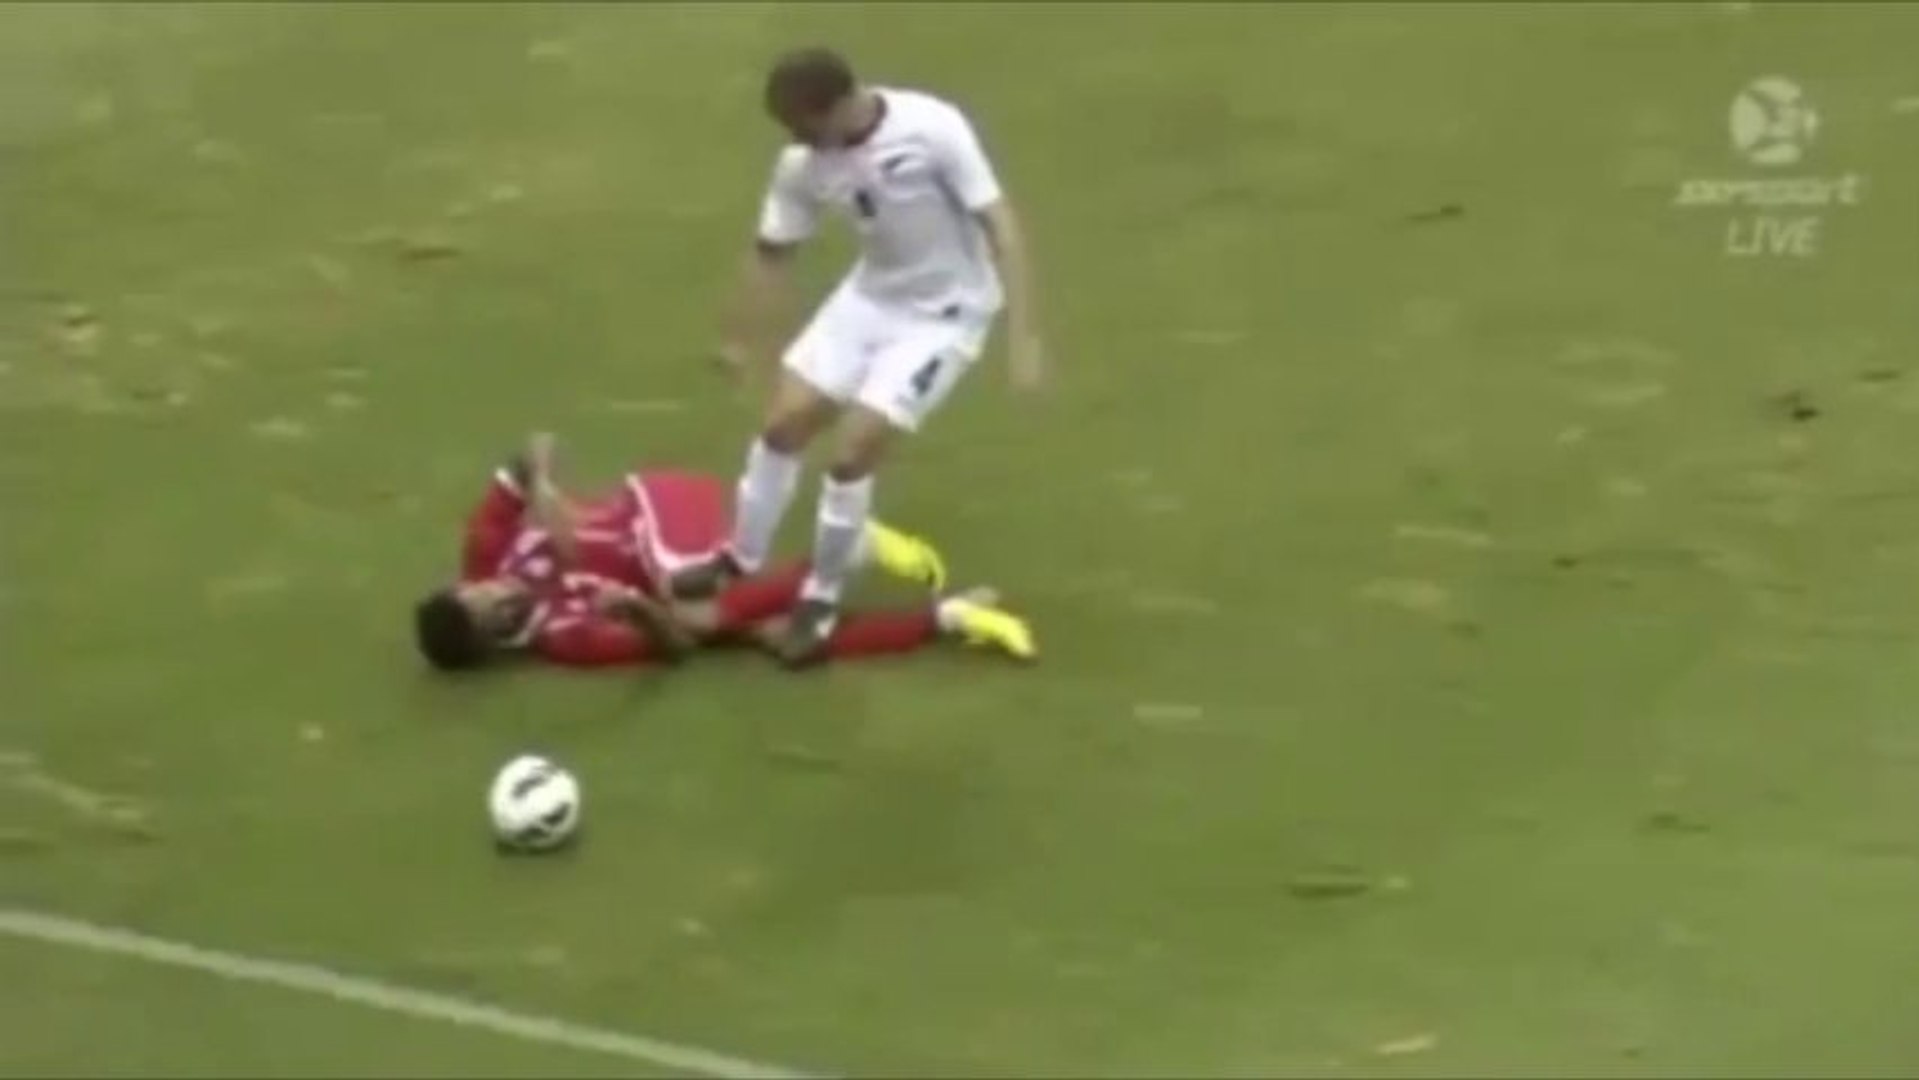 Un essuyage de crampons inexplicable à la Zidane ! - Vidéo Dailymotion